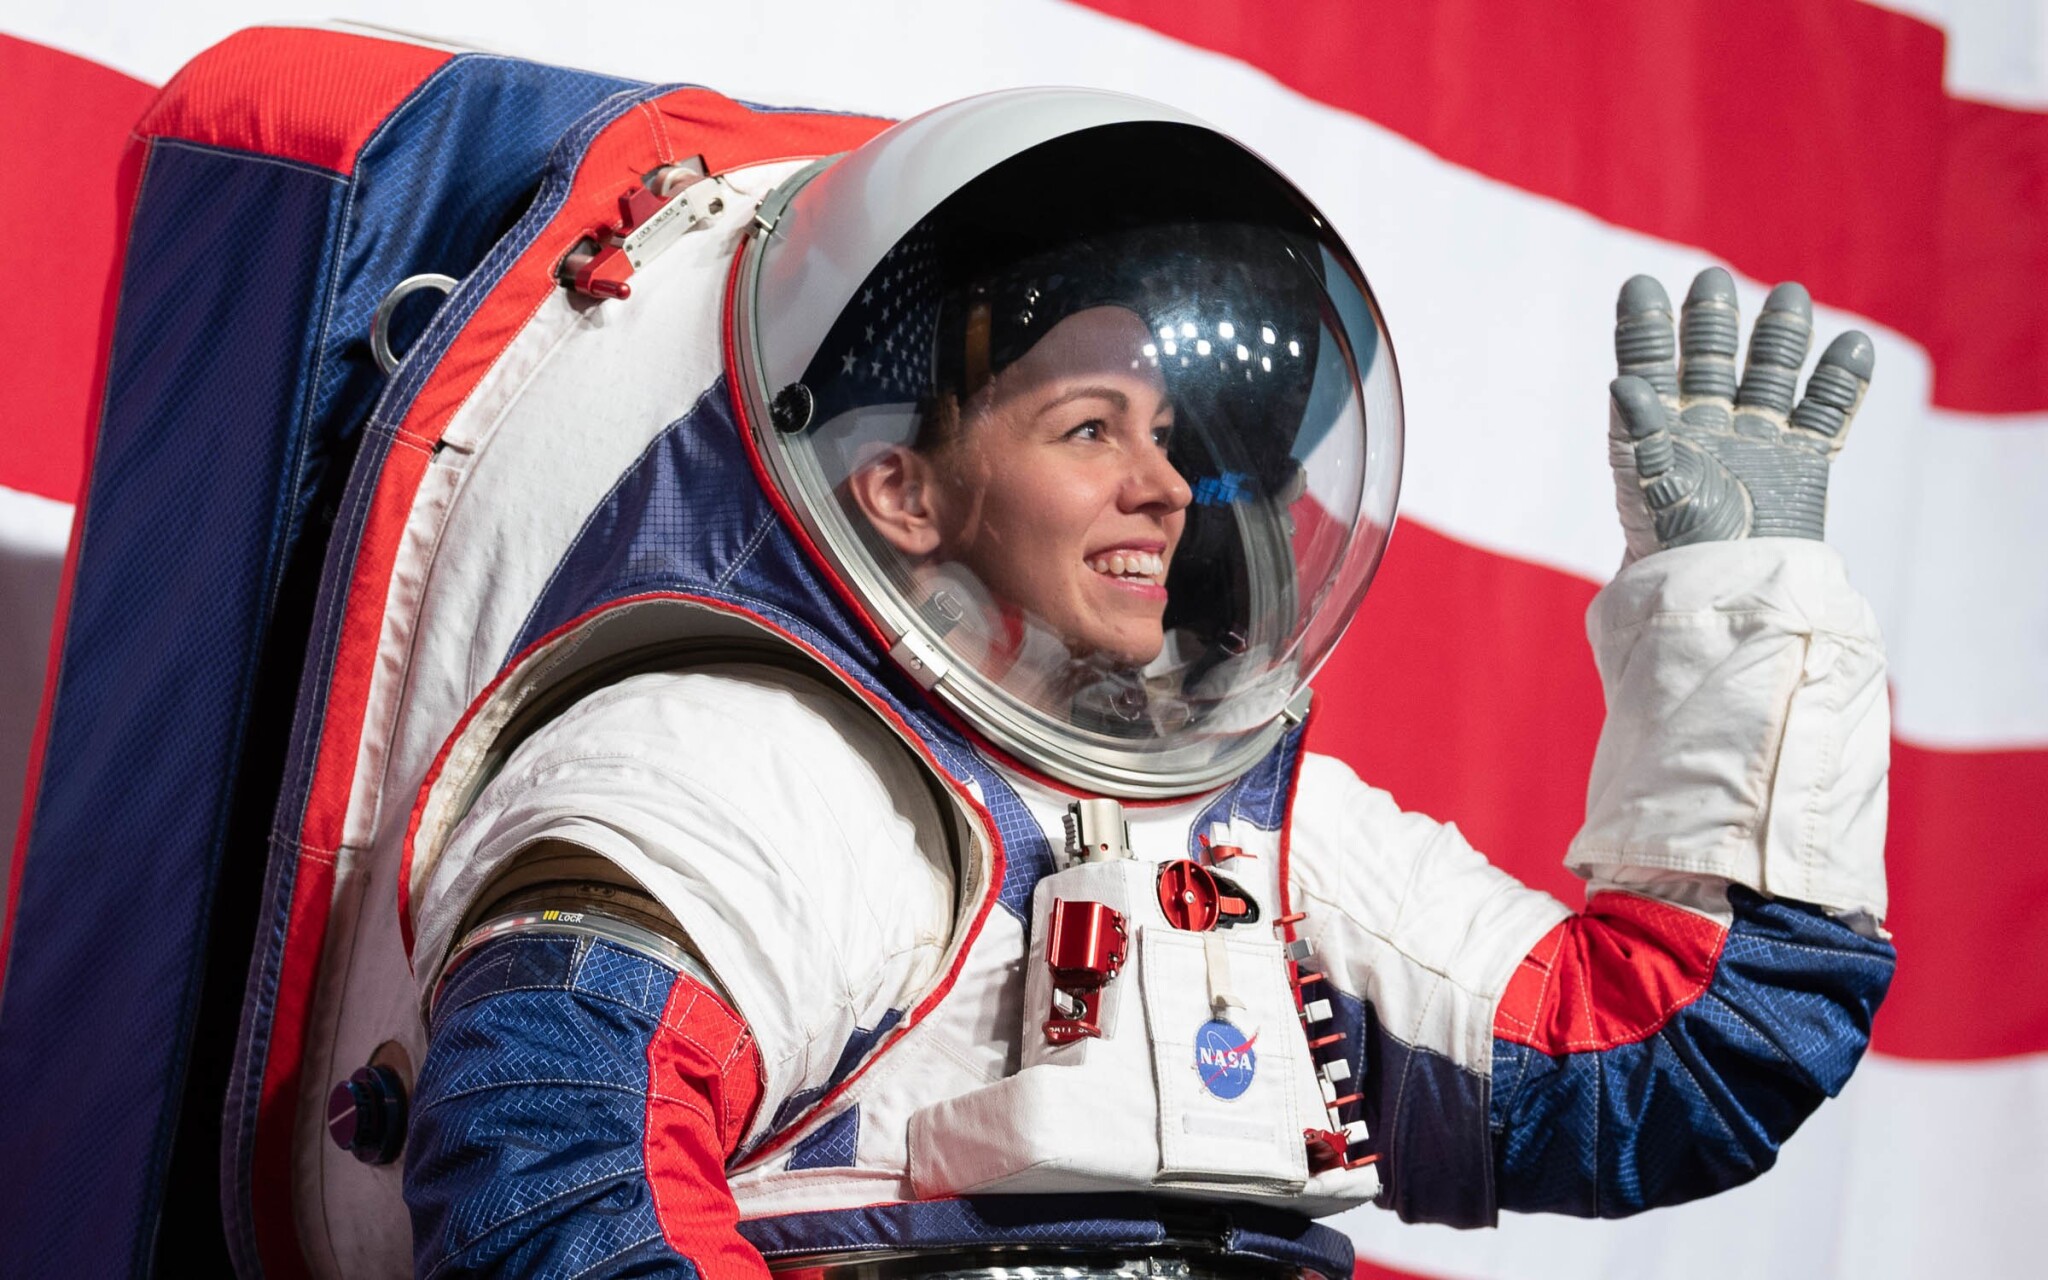 První žena na Měsíci má konečně skafandr. Oblek jako ze Star Treku představil i Branson